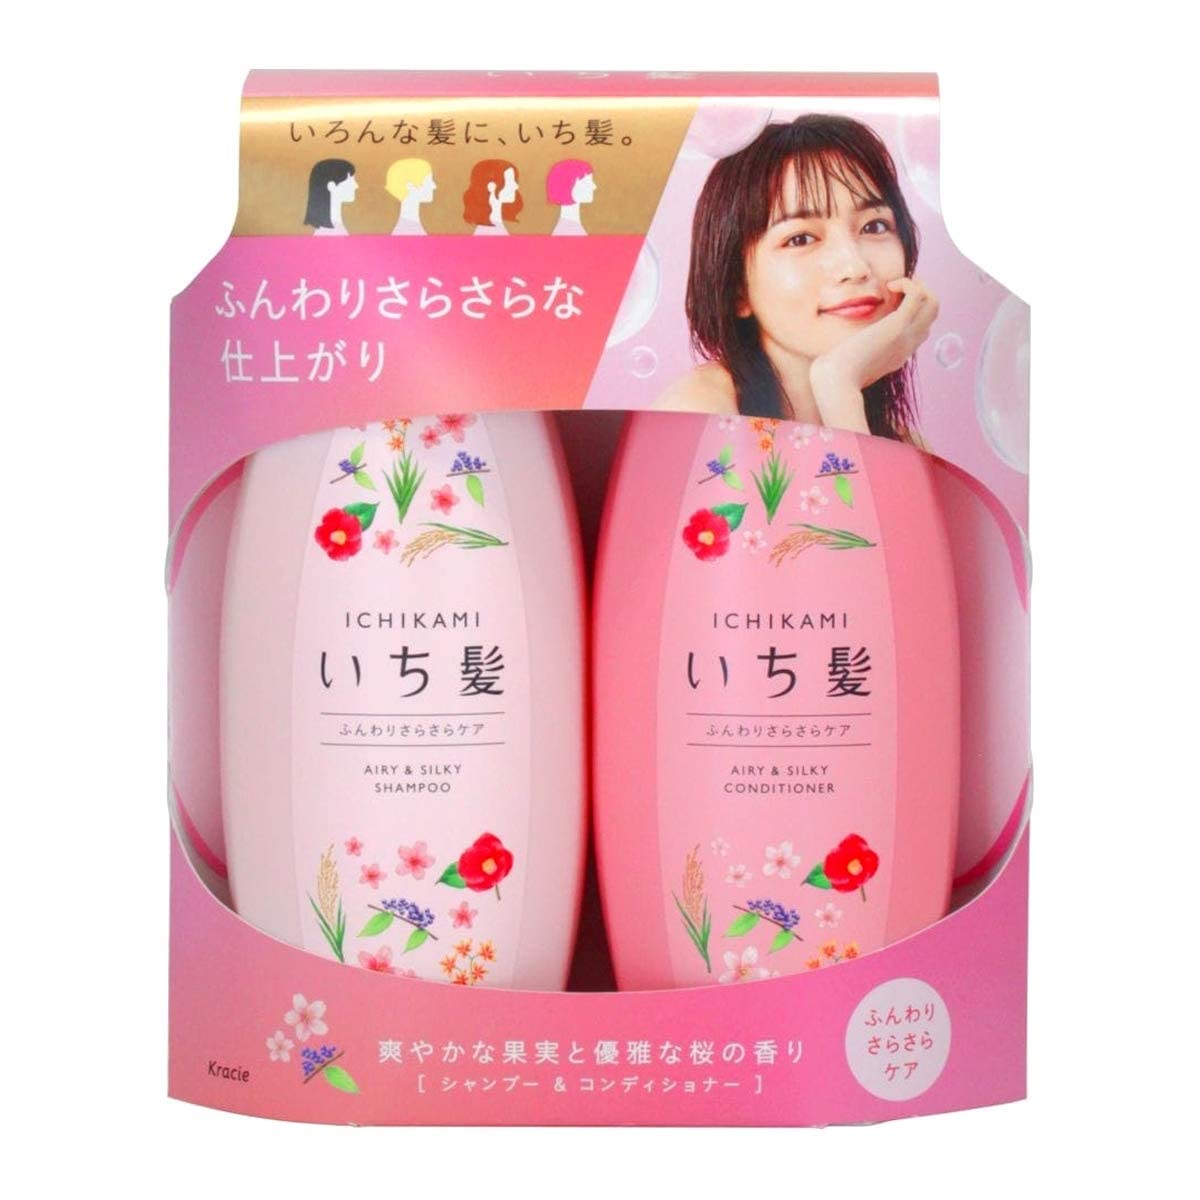 Ichikami Soft Volume (NEW2017!) Shampoo & conditioner Set (Pink Bottles)